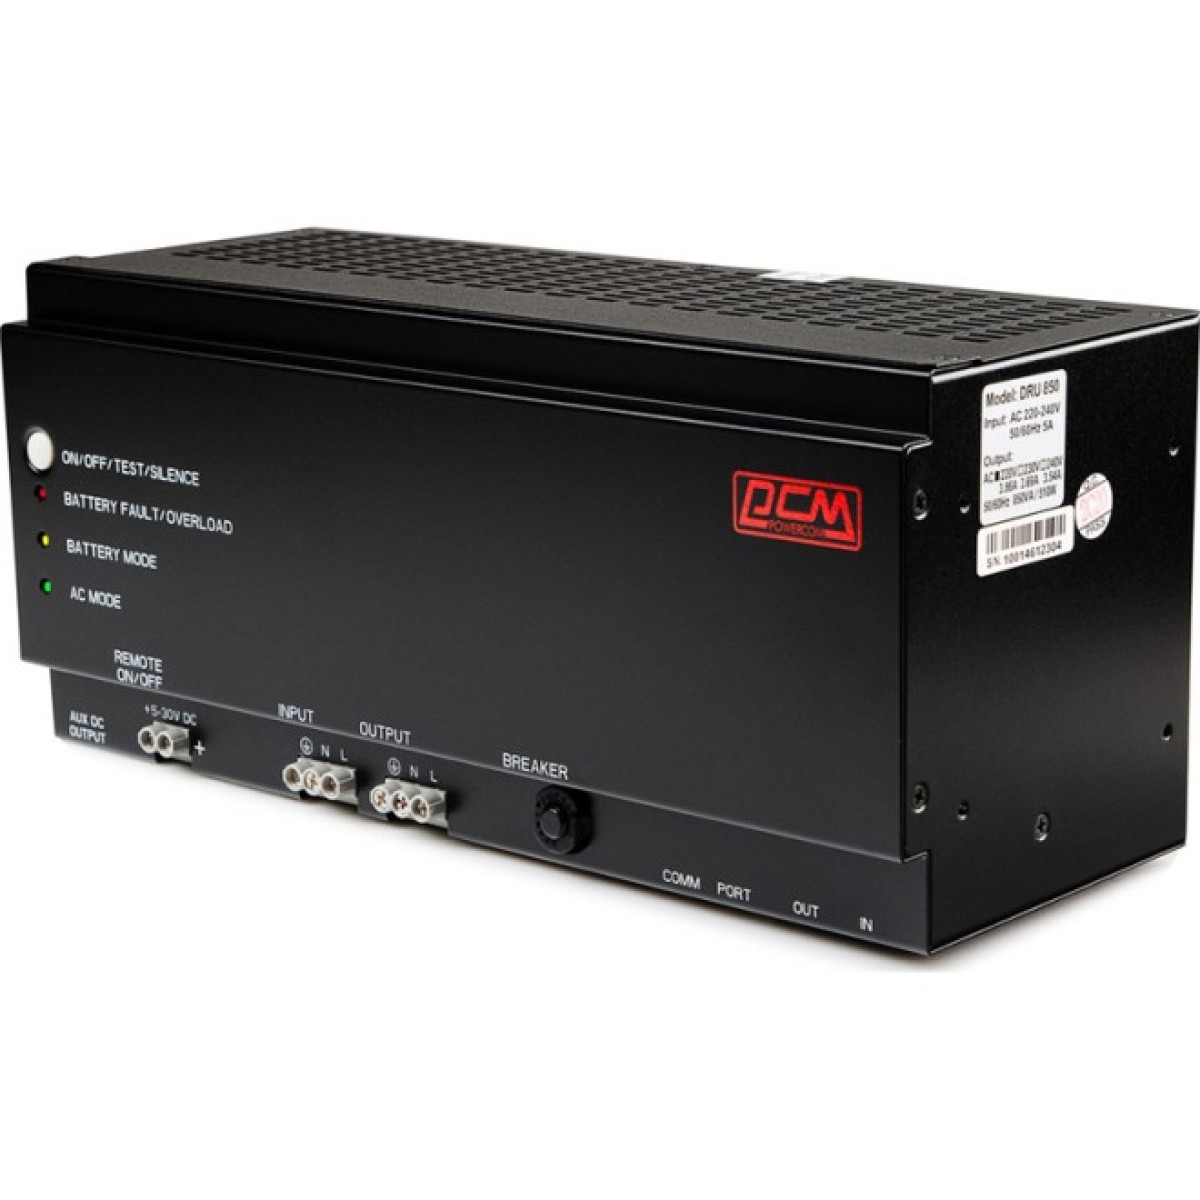 ДБЖ Powercom DRU-850, 510 Вт, на DIN-рейку (DRU850DIN) 256_256.jpg